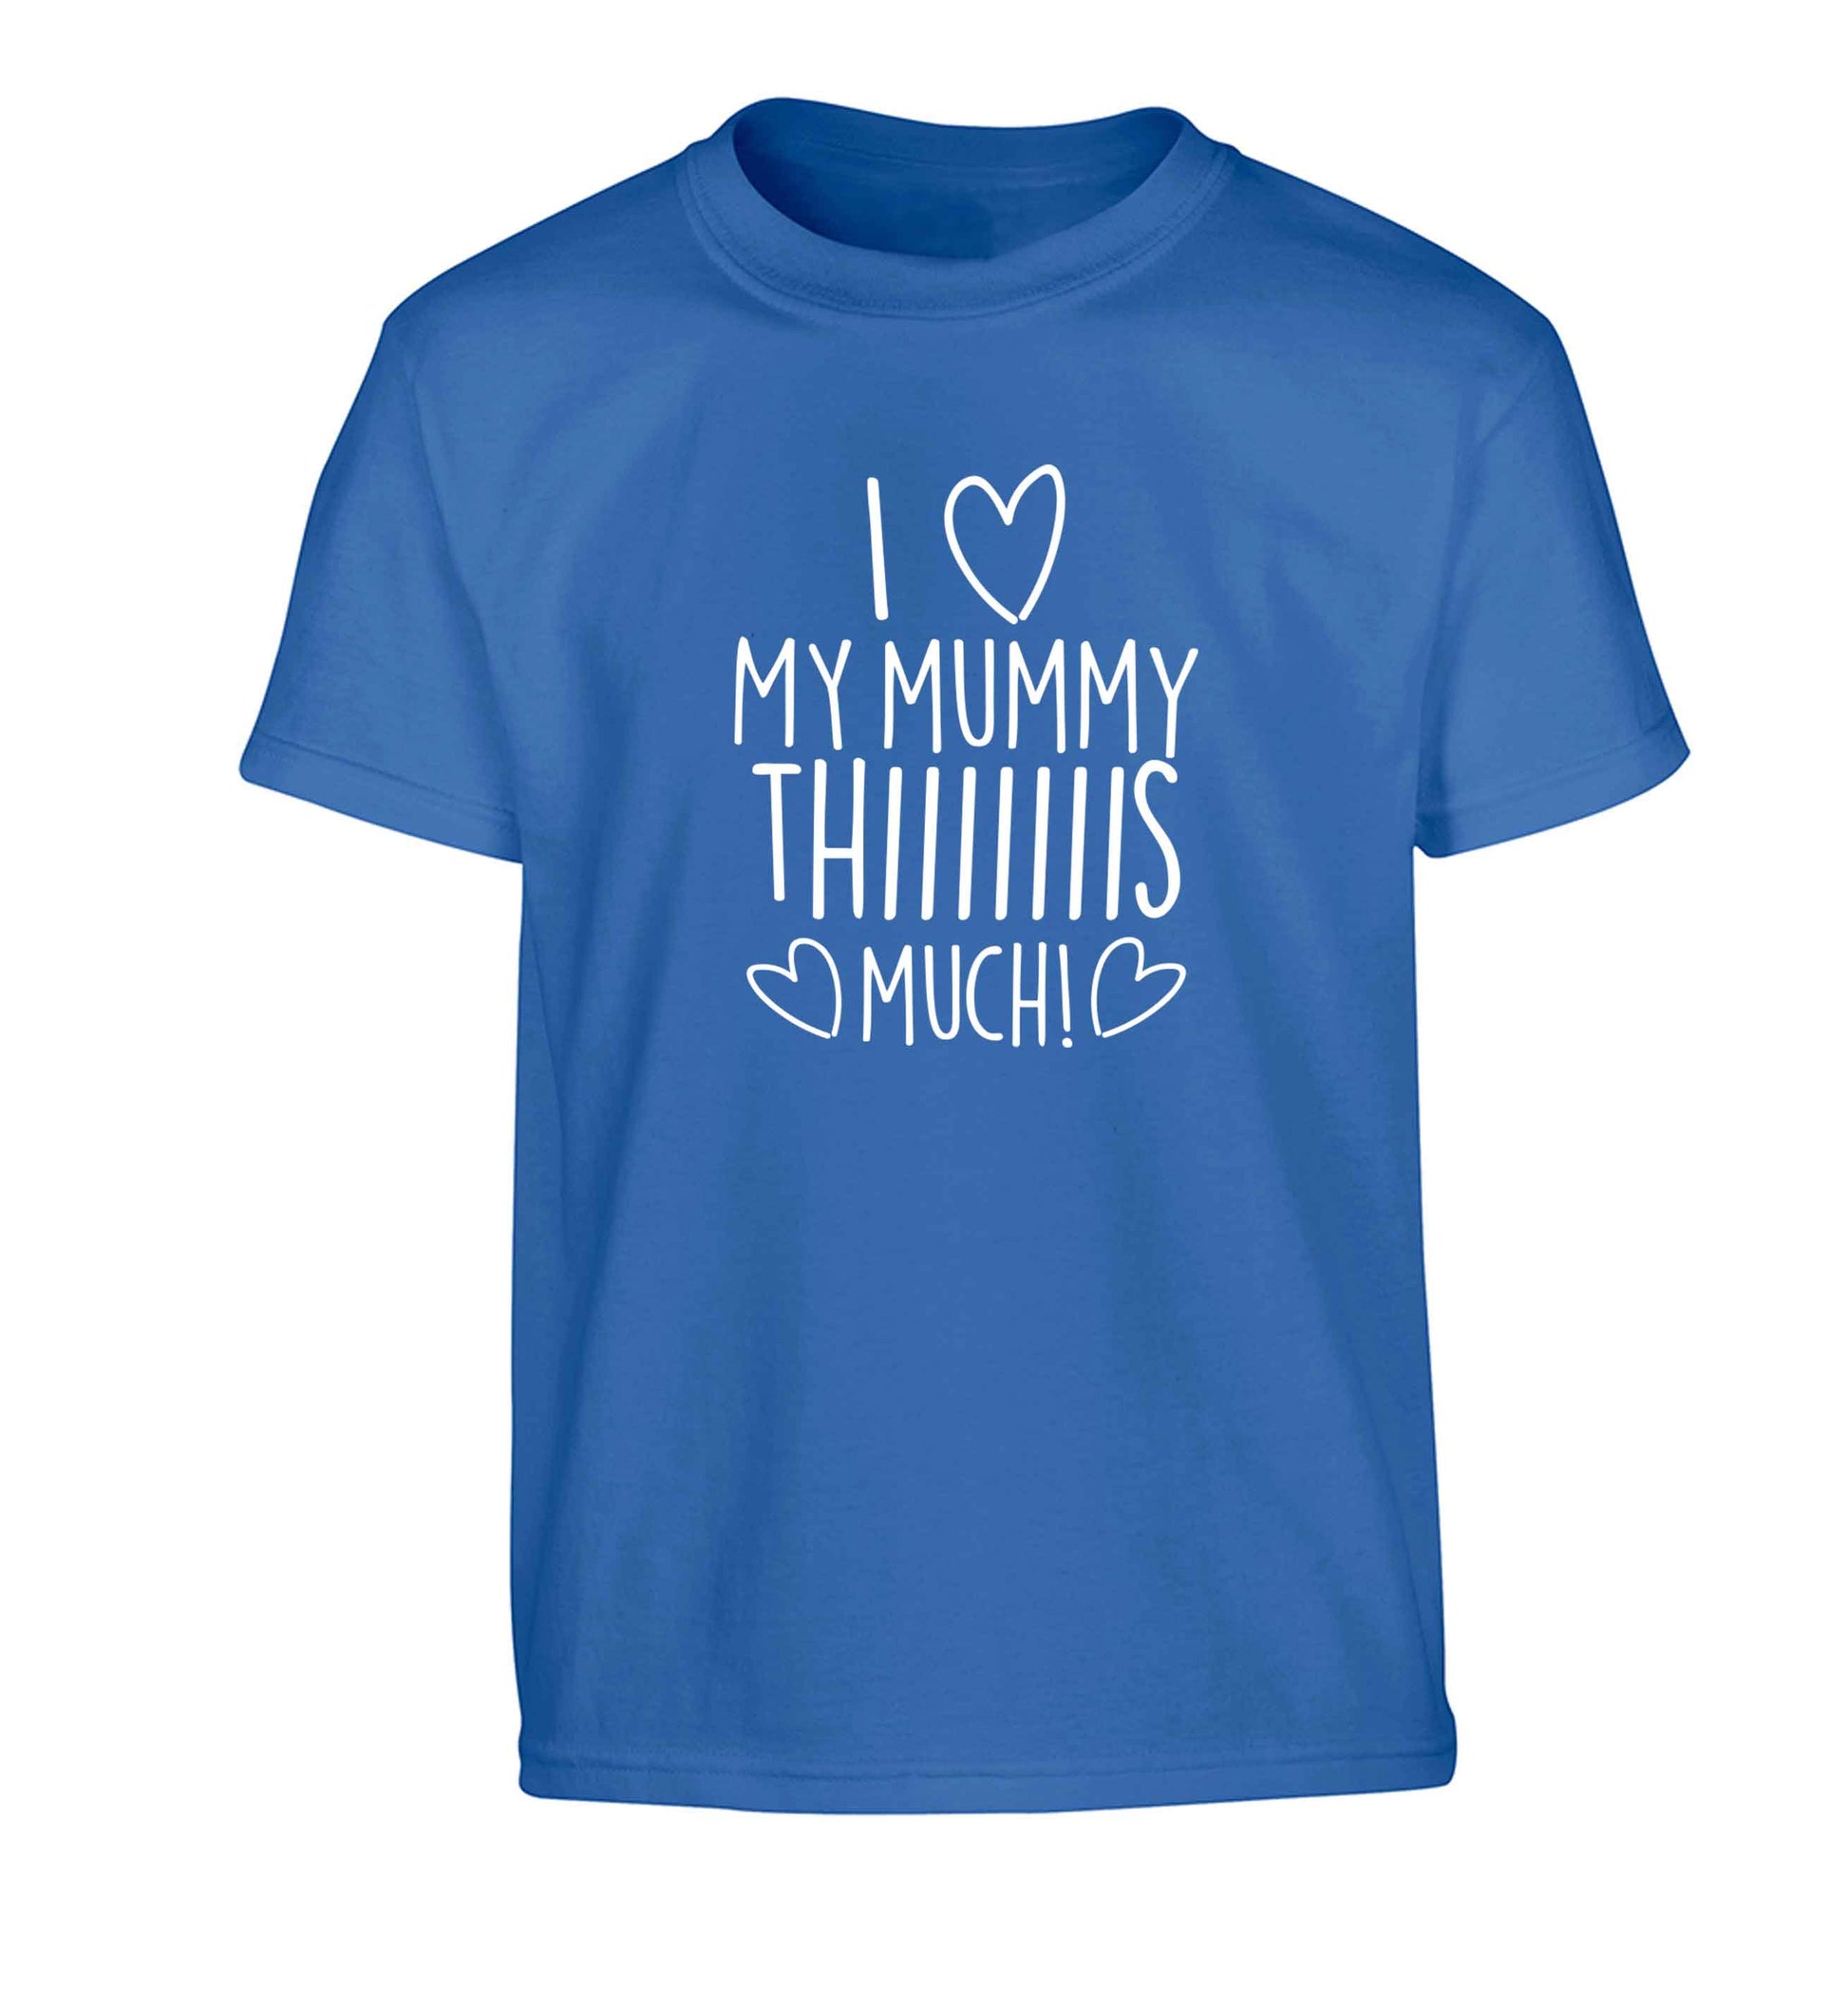 I love my mummy thiiiiis much! Children's blue Tshirt 12-13 Years